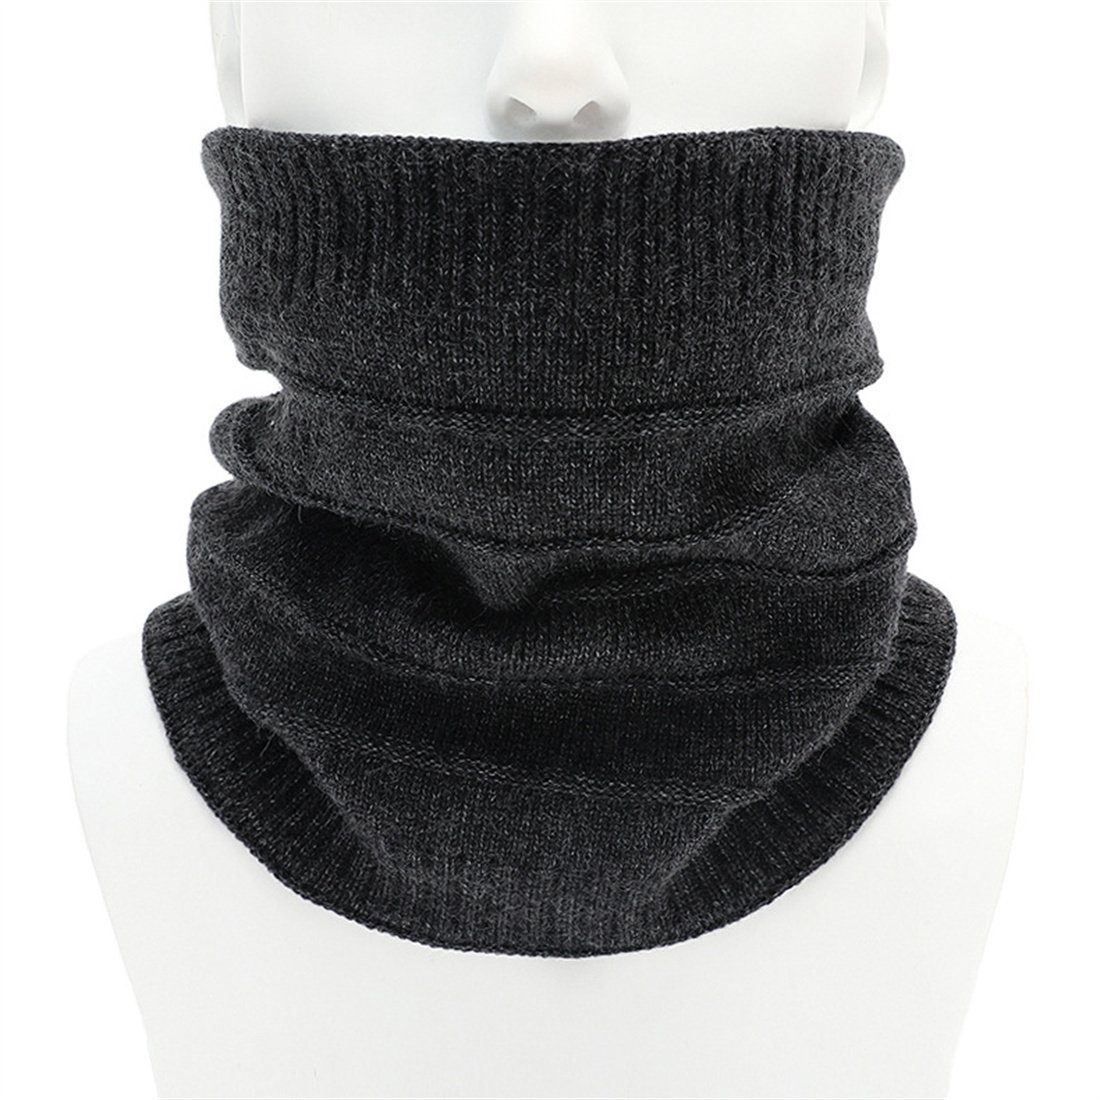 DÖRÖY Modeschal Unisex einfarbiger warmer gestreifter Schal, gestrickte Halsbedeckung dunkelgrau | Modeschals